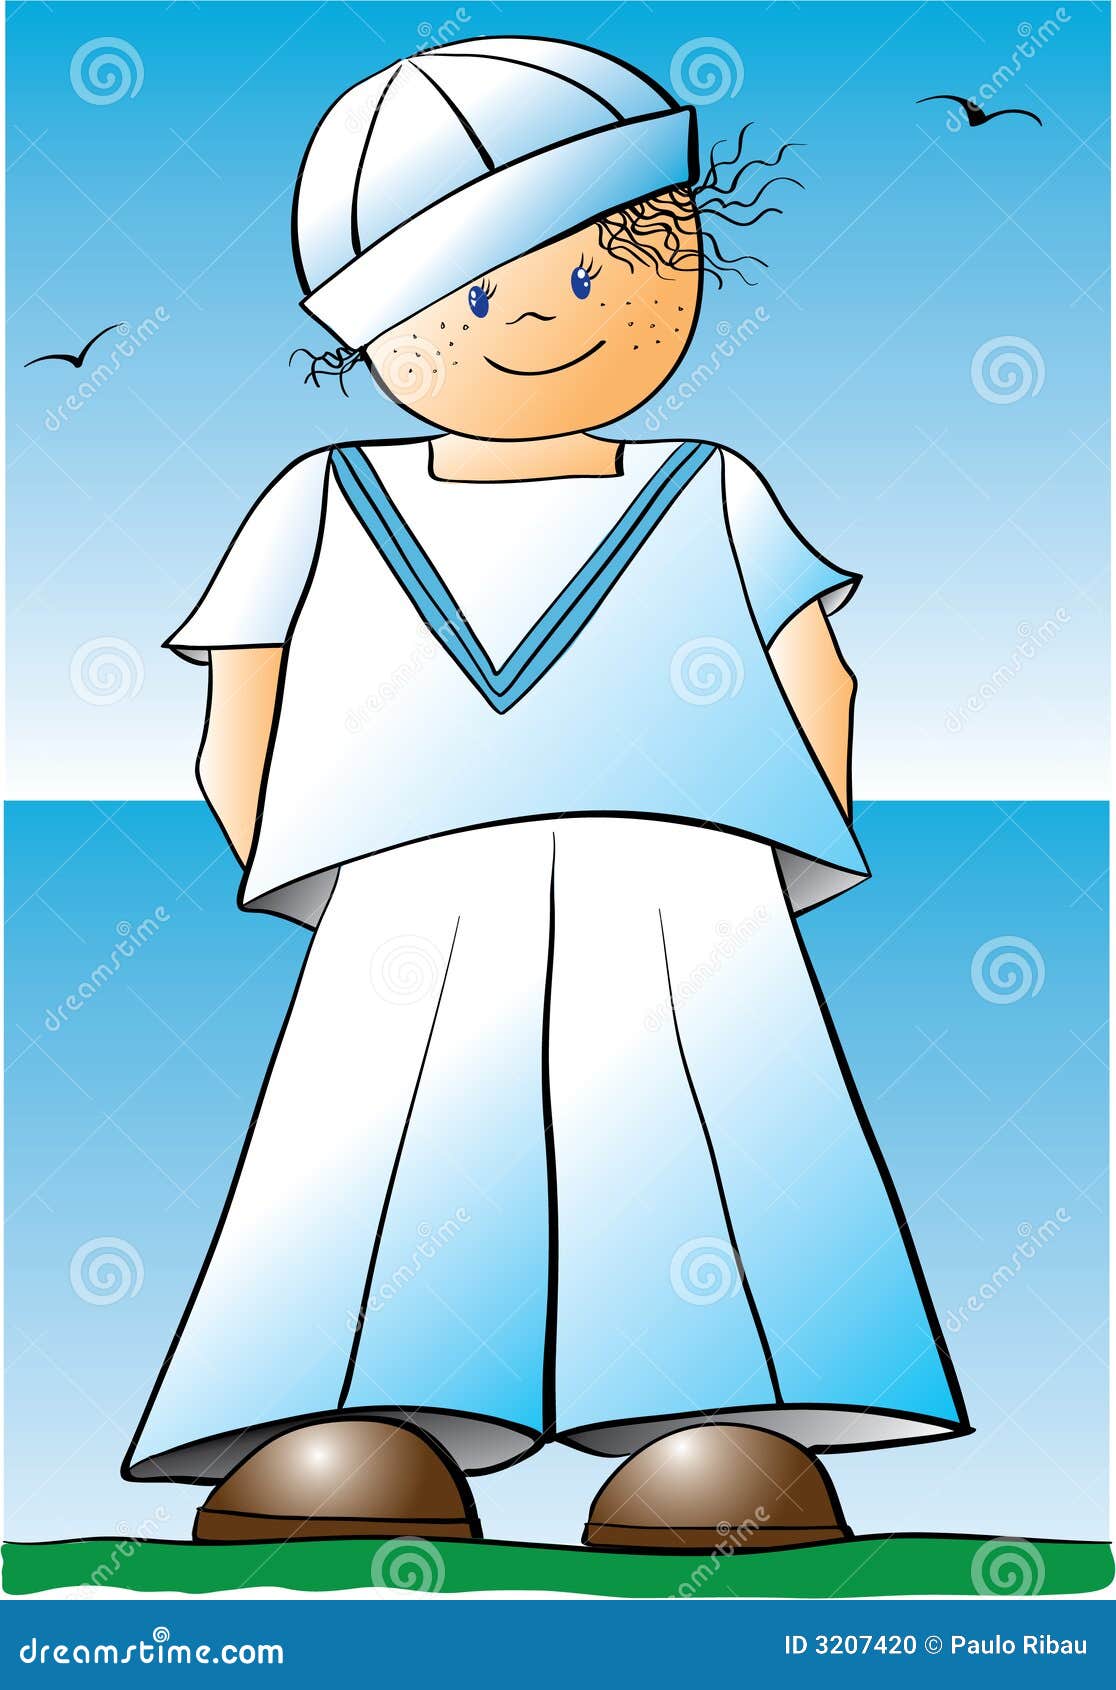 Chubby sailor boy cartoon